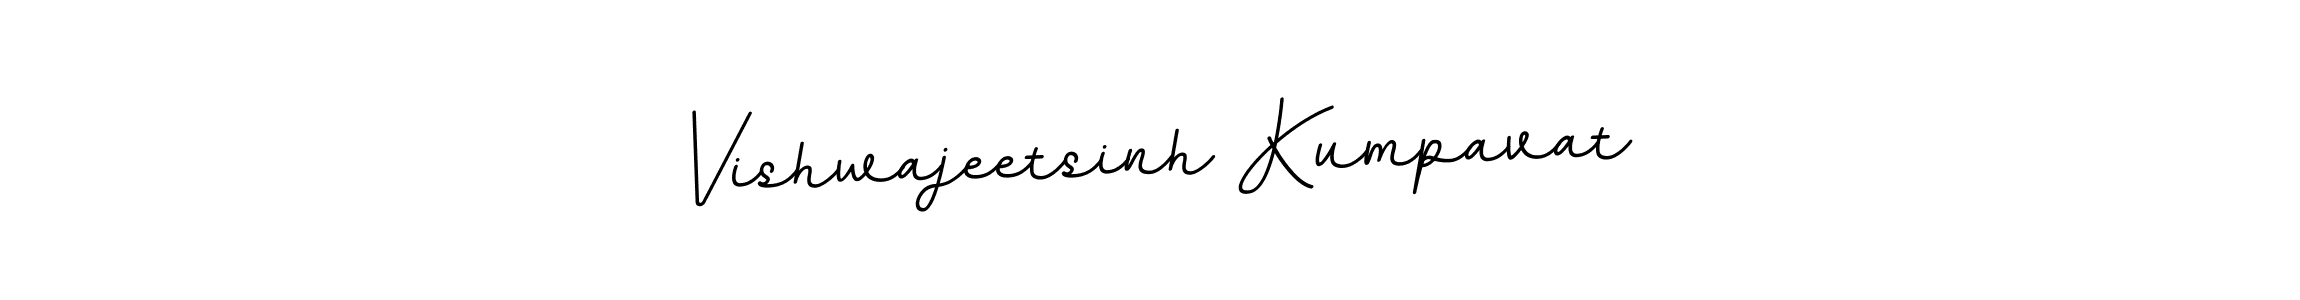 Vishwajeetsinh Kumpavat stylish signature style. Best Handwritten Sign (BallpointsItalic-DORy9) for my name. Handwritten Signature Collection Ideas for my name Vishwajeetsinh Kumpavat. Vishwajeetsinh Kumpavat signature style 11 images and pictures png